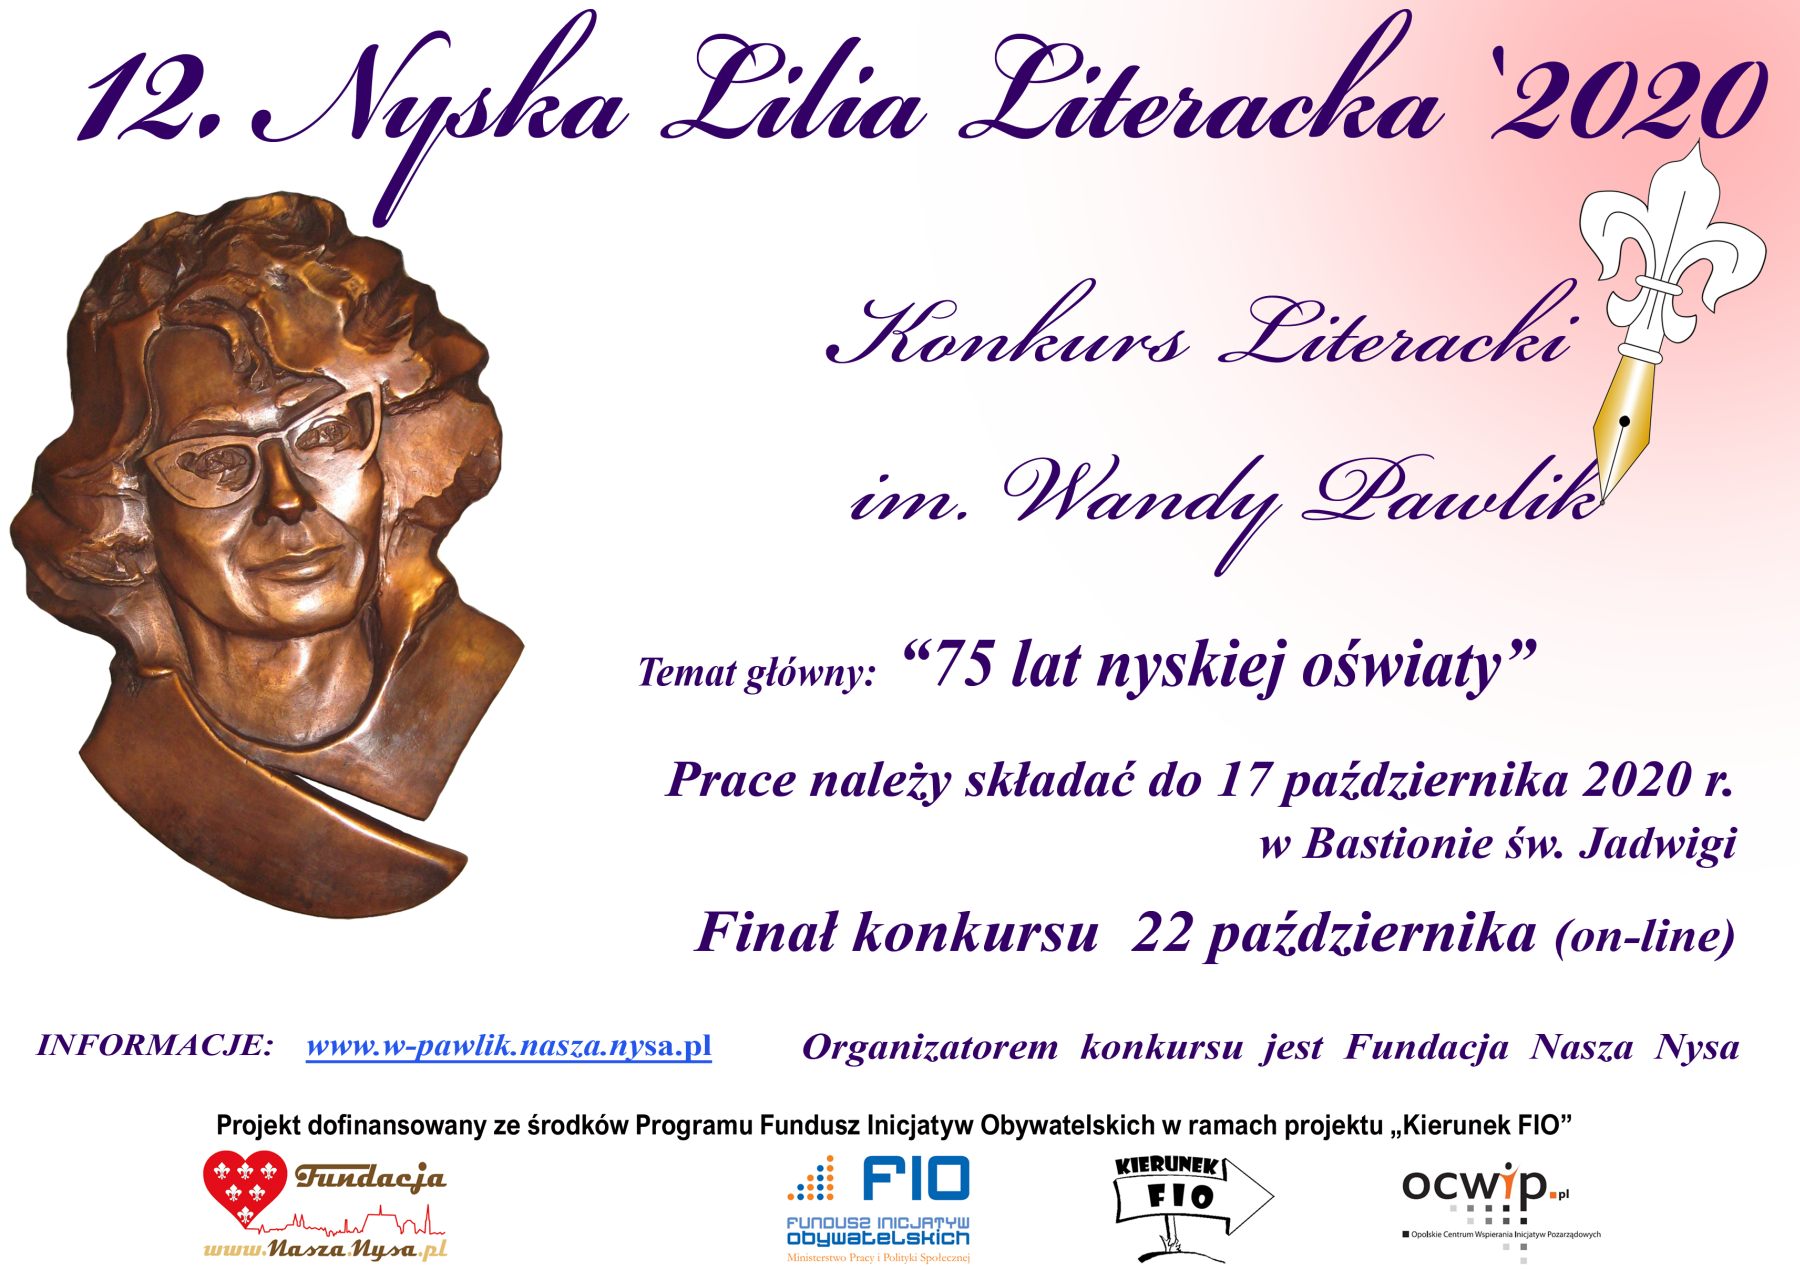 Plakat przedstawia informację o konkursie literackim NYSKA LILIA LITERACKA